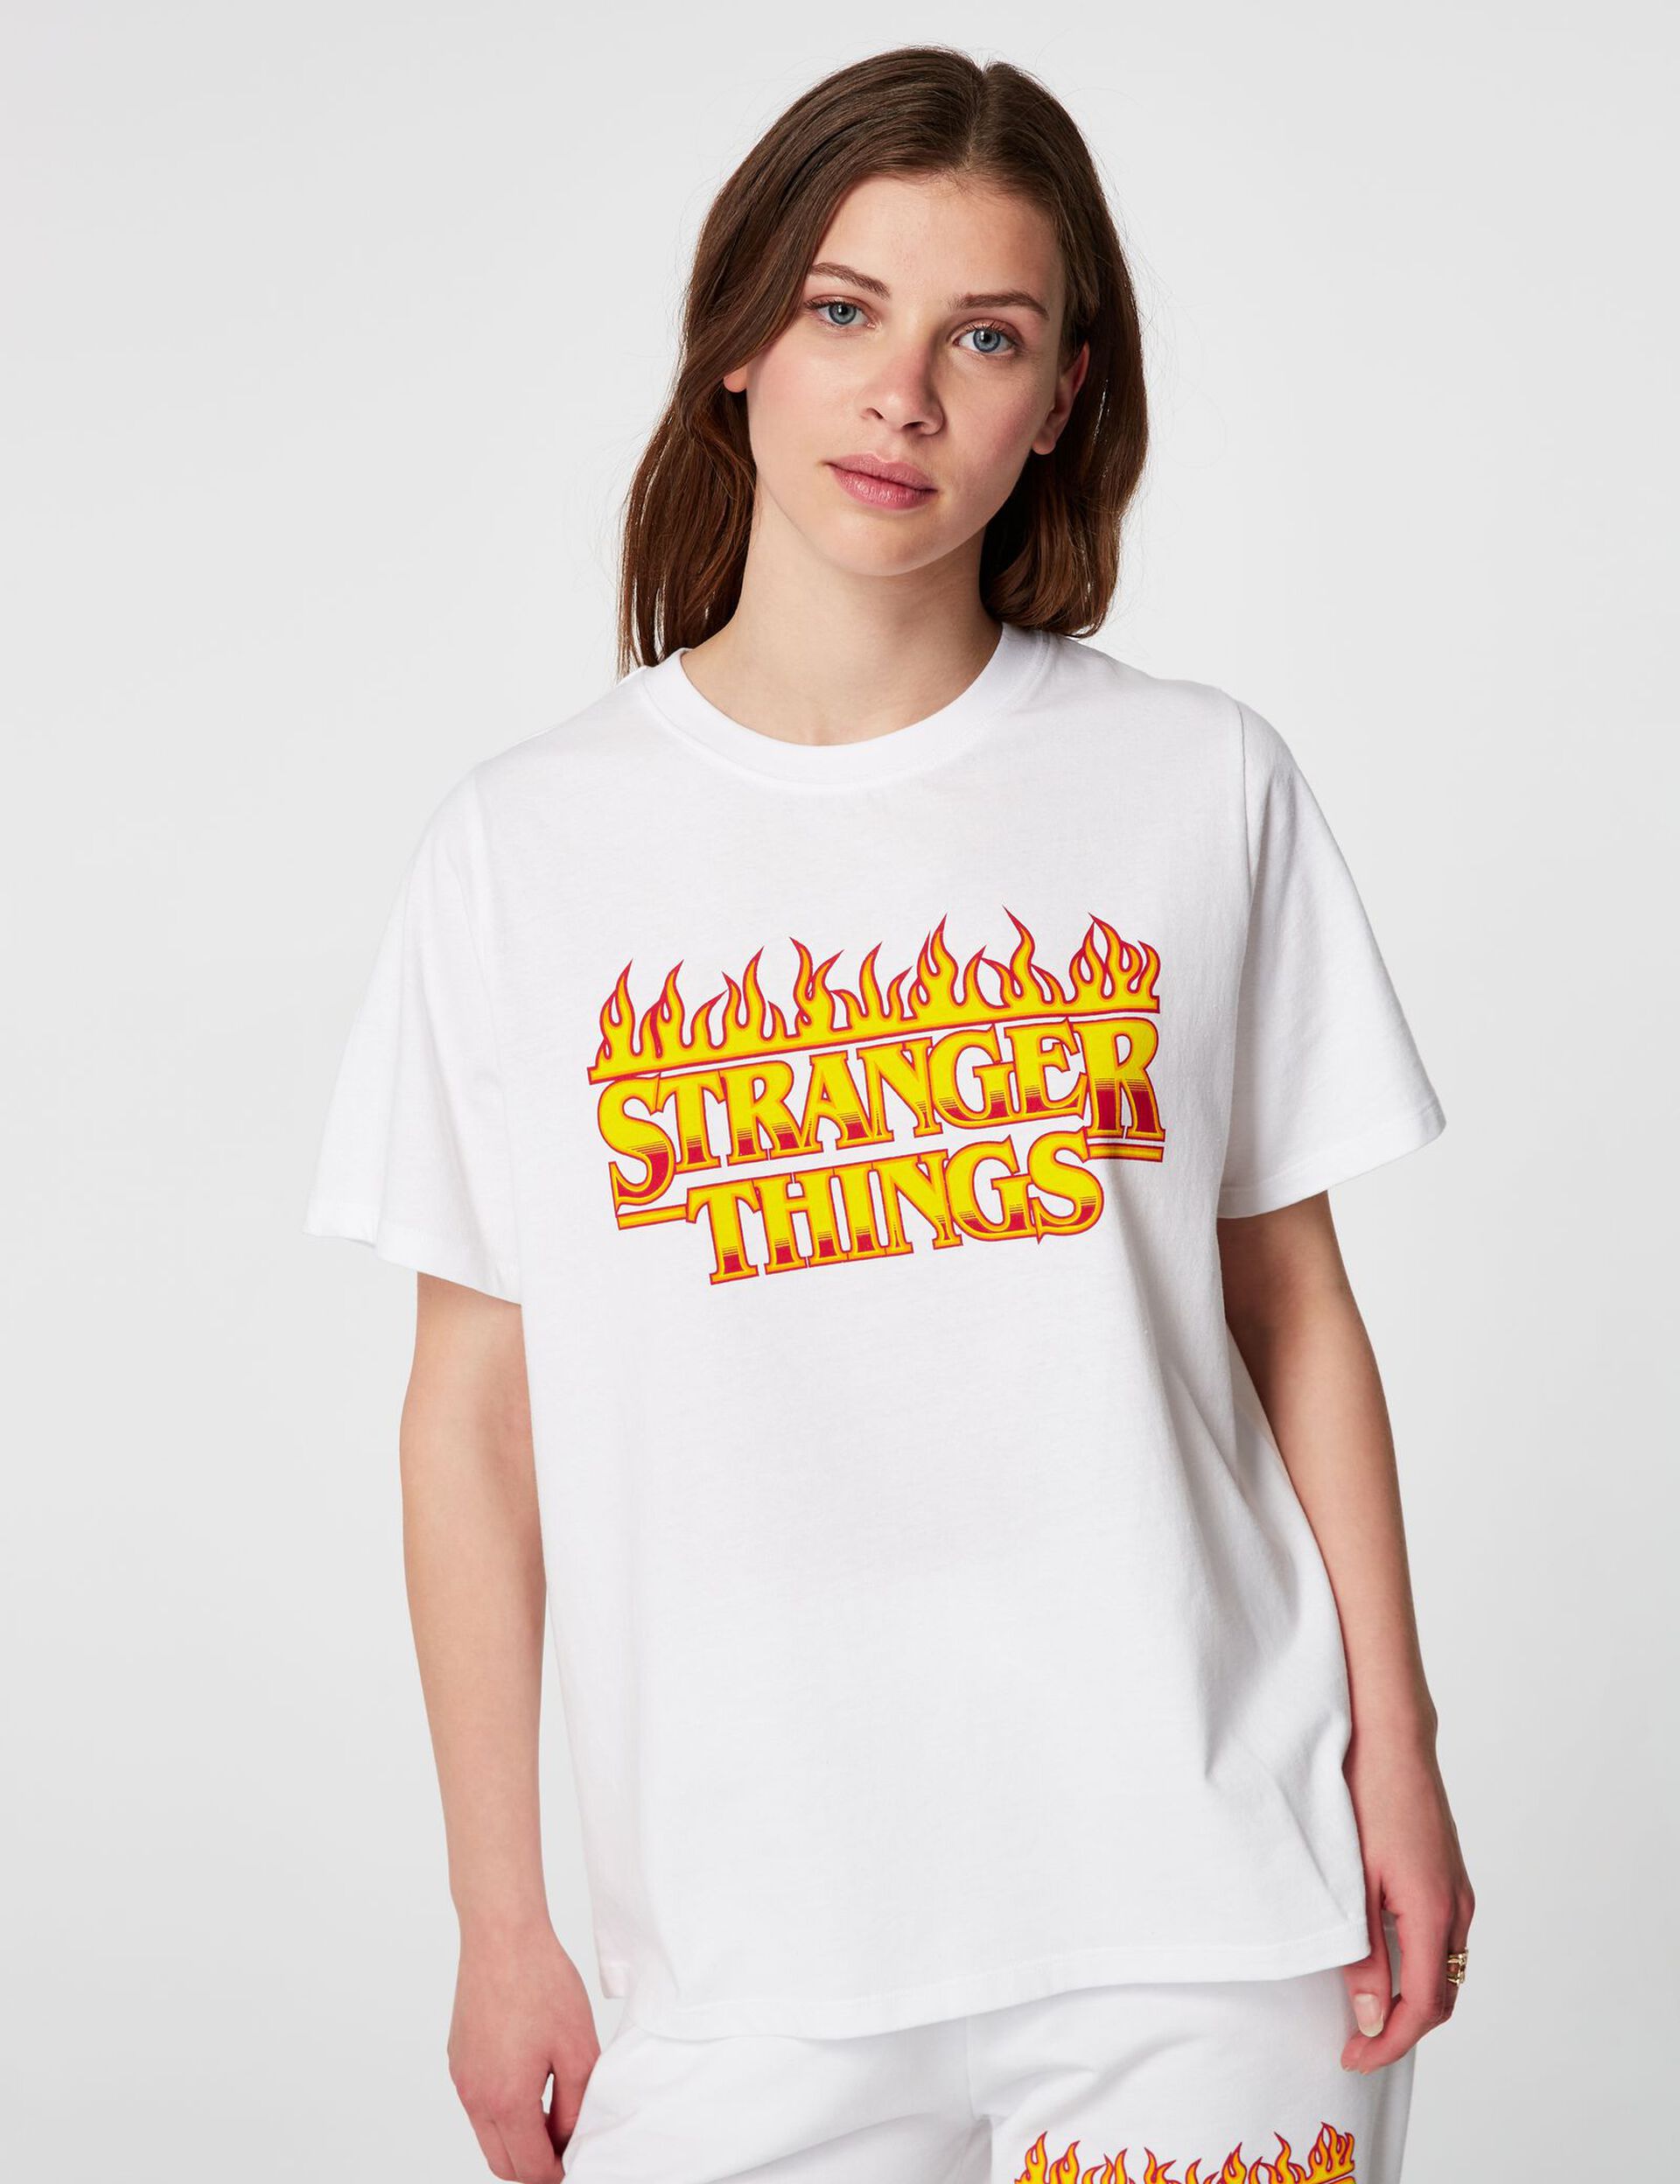 Stranger Things T-shirt